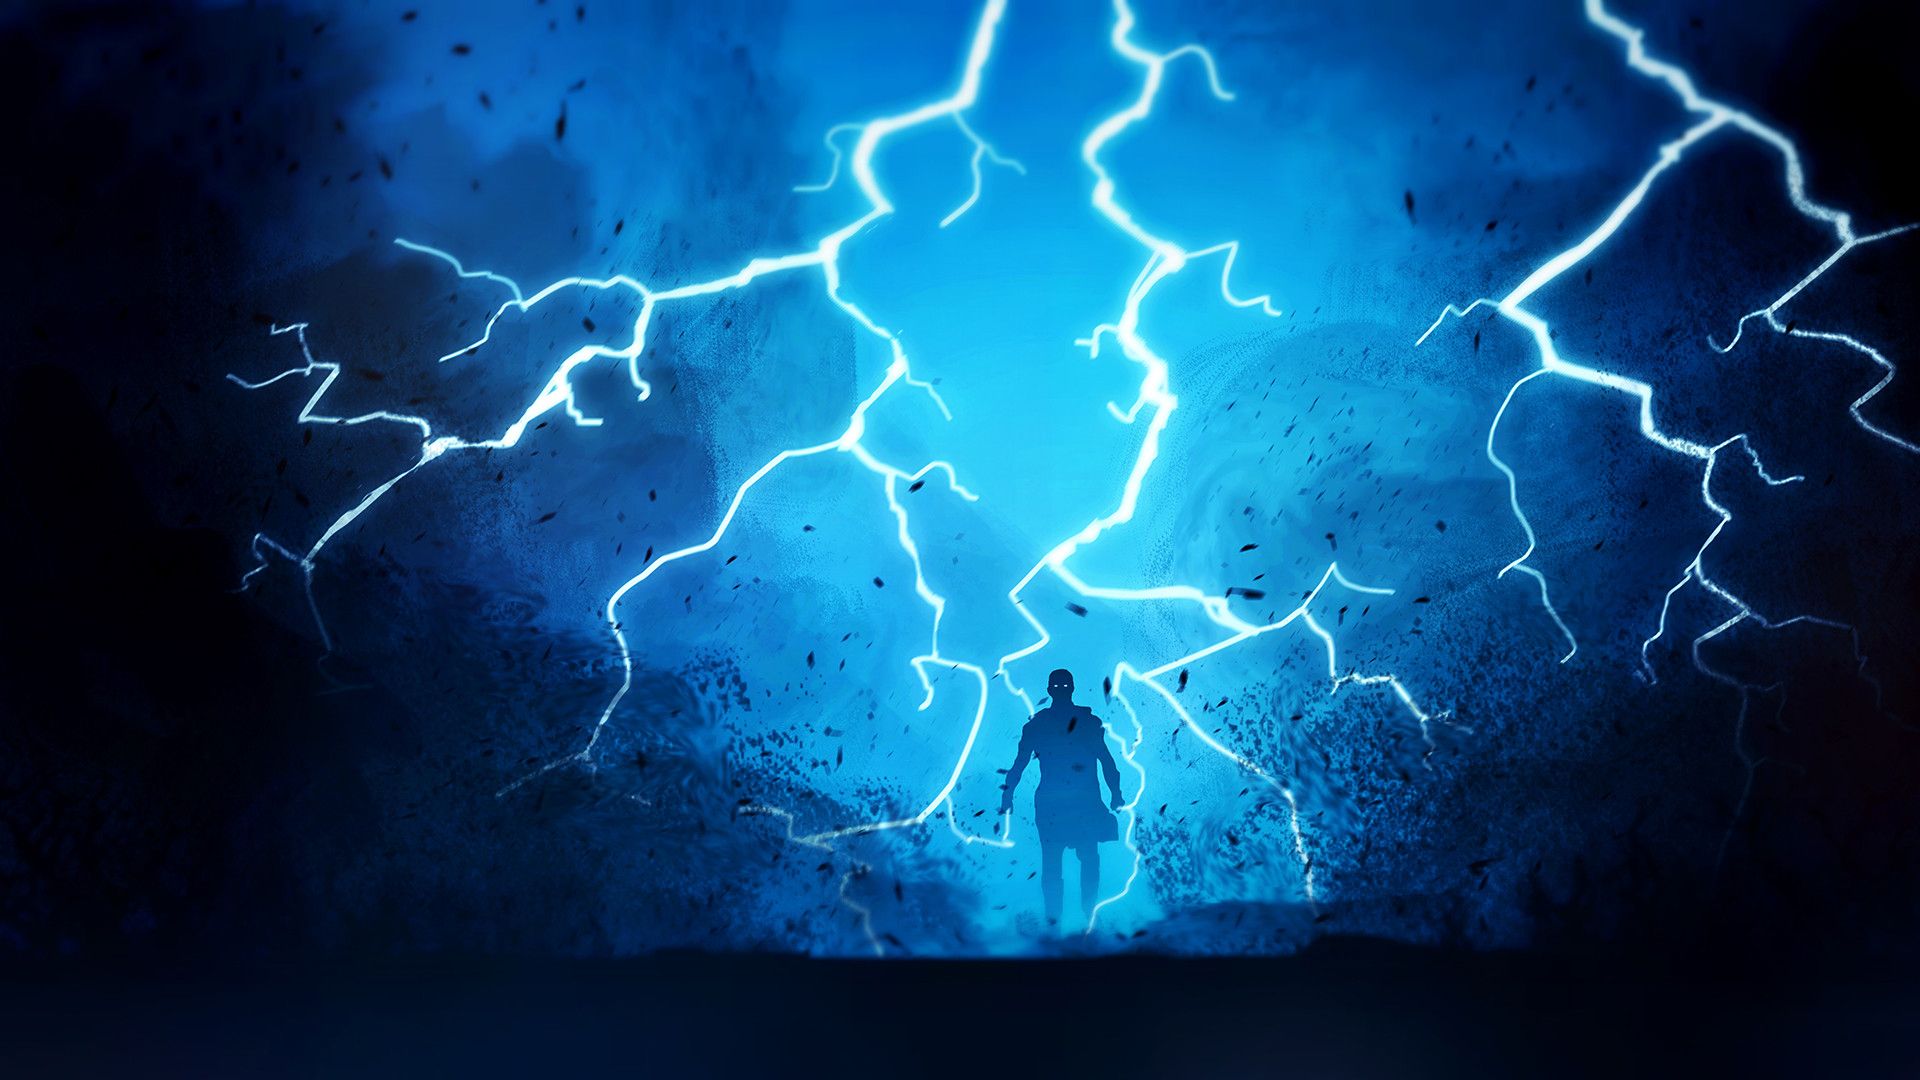 Warrior Fantasy Lightning, HD Artist, 4k Wallpapers, Image.